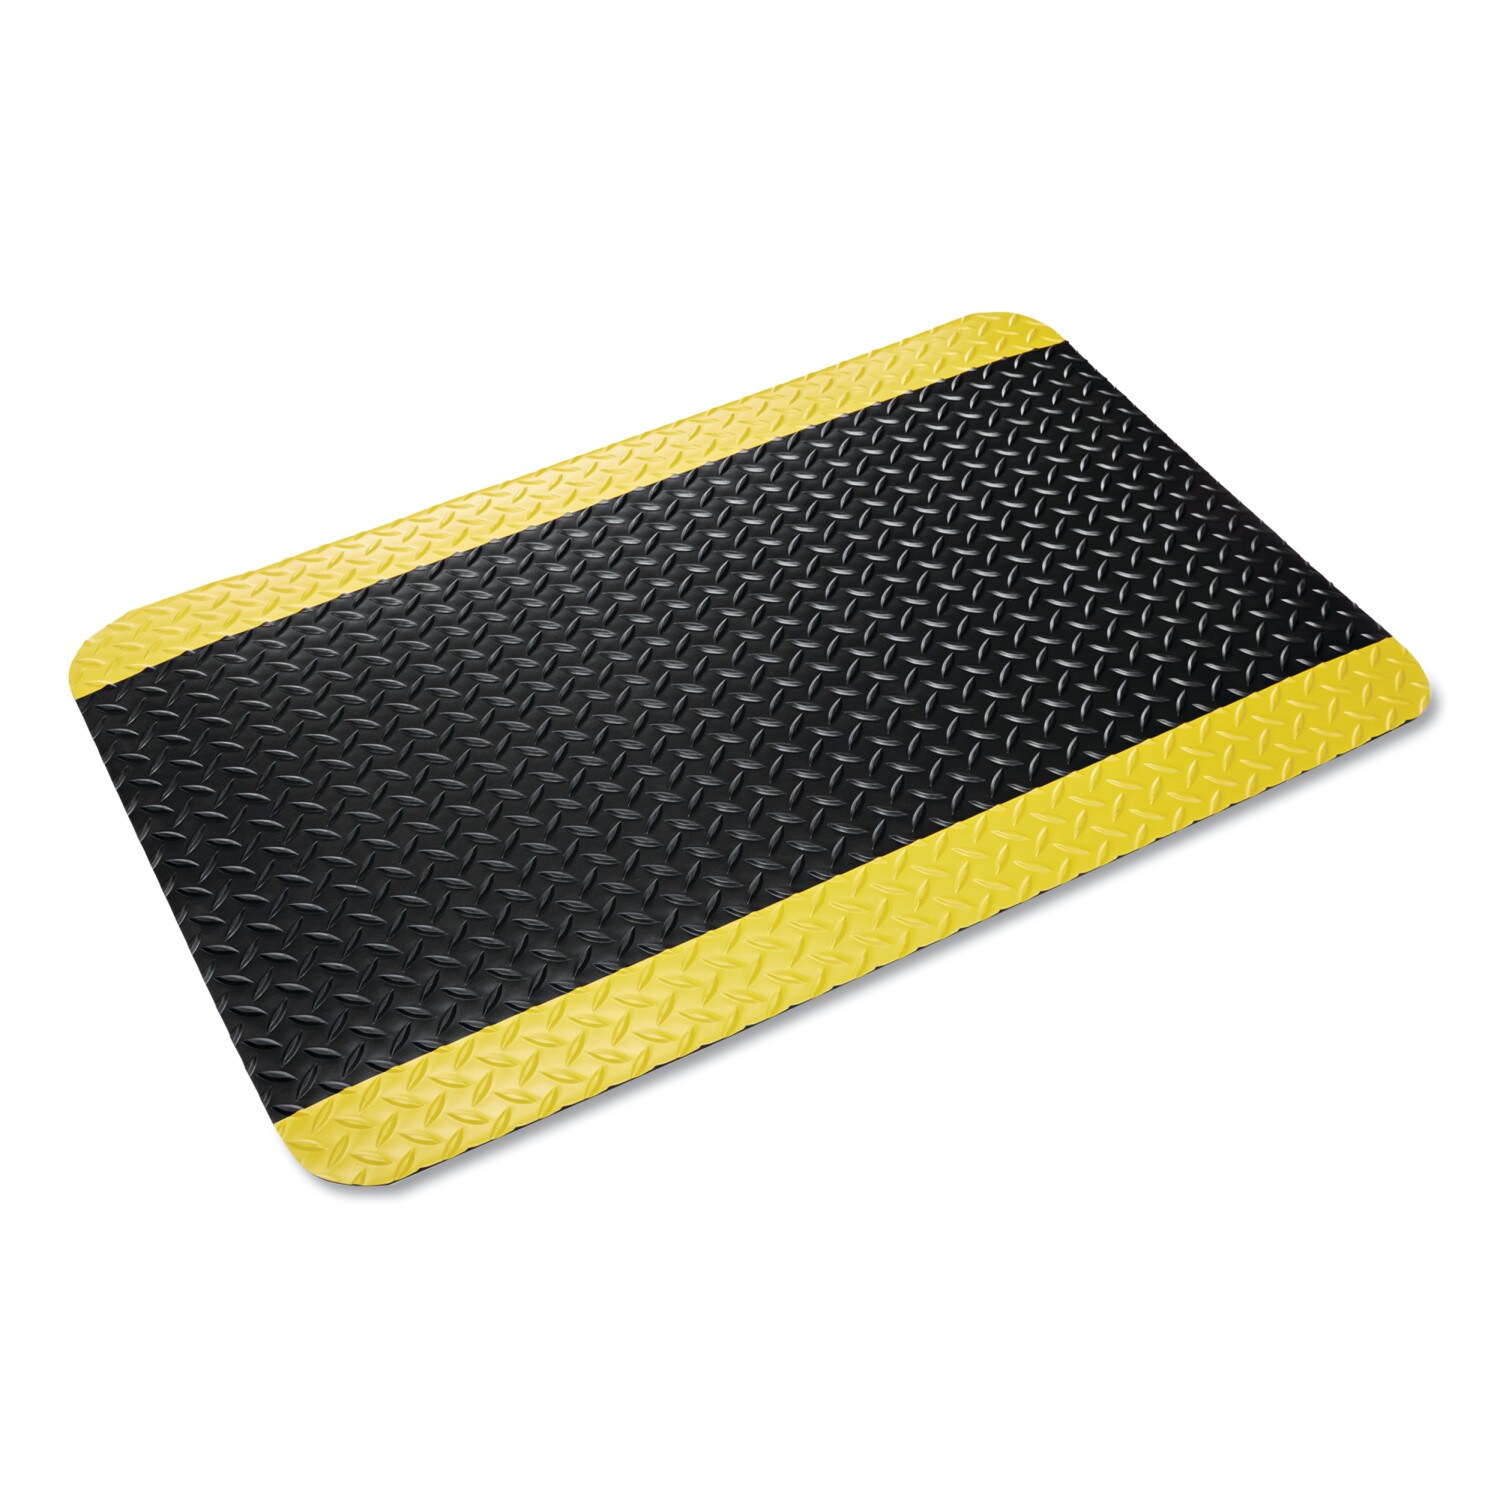 3x5' Diamond Dek Anti-Fatigue Mat Black w/ Yellow Safety Border